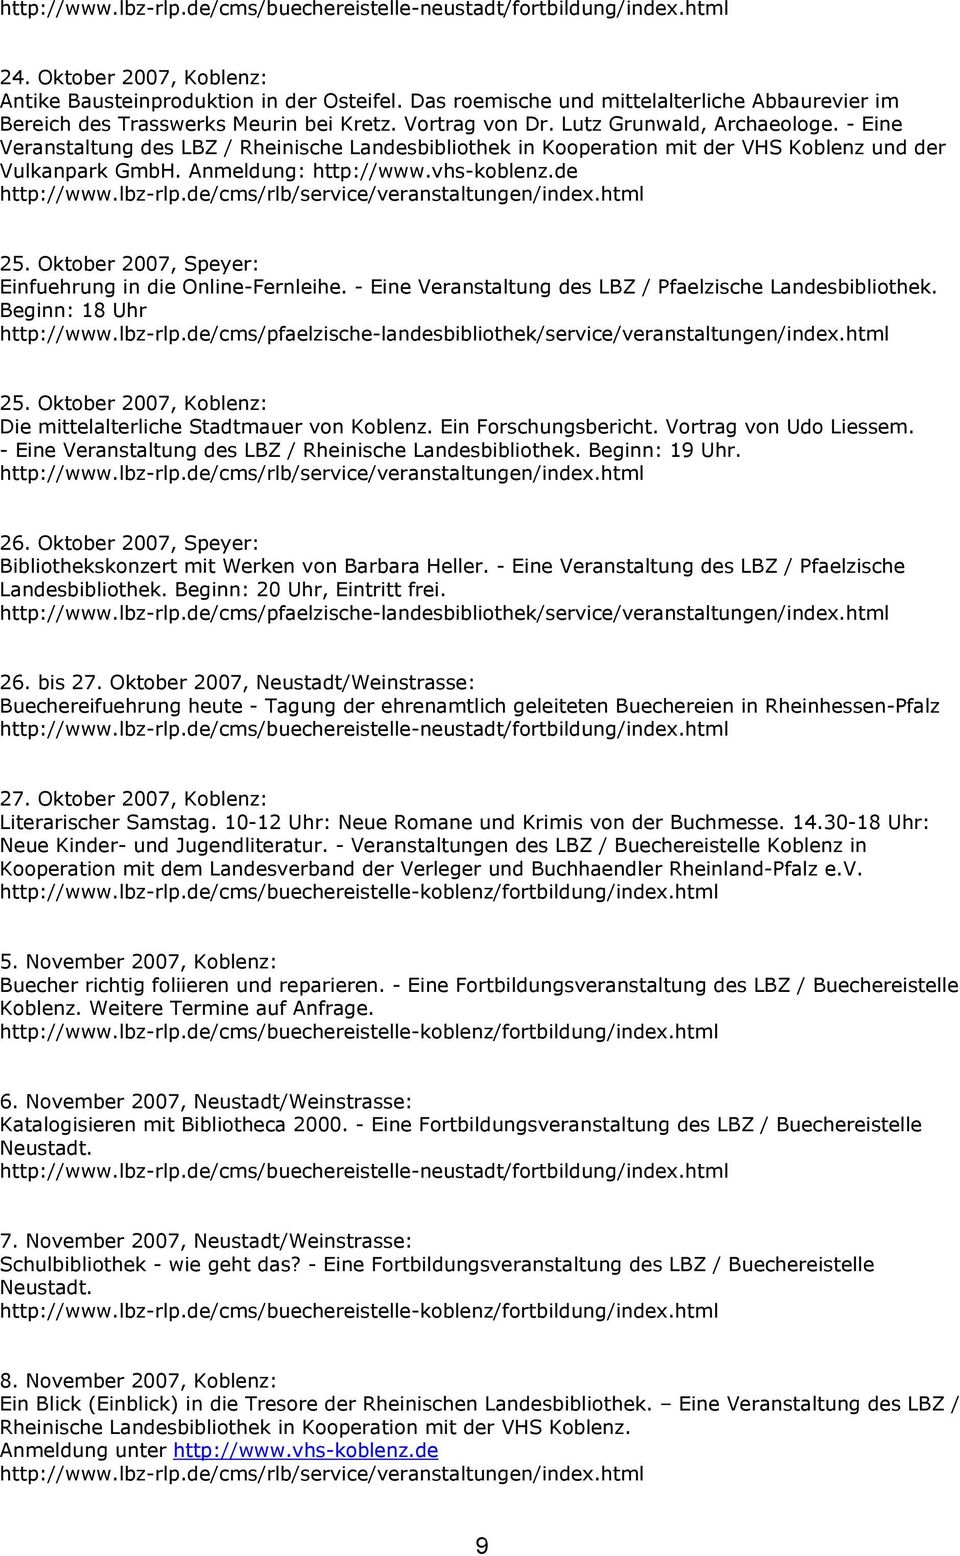 Oktober 2007, Speyer: Einfuehrung in die Online-Fernleihe. - Eine Veranstaltung des LBZ / Pfaelzische Landesbibliothek. Beginn: 18 Uhr 25.